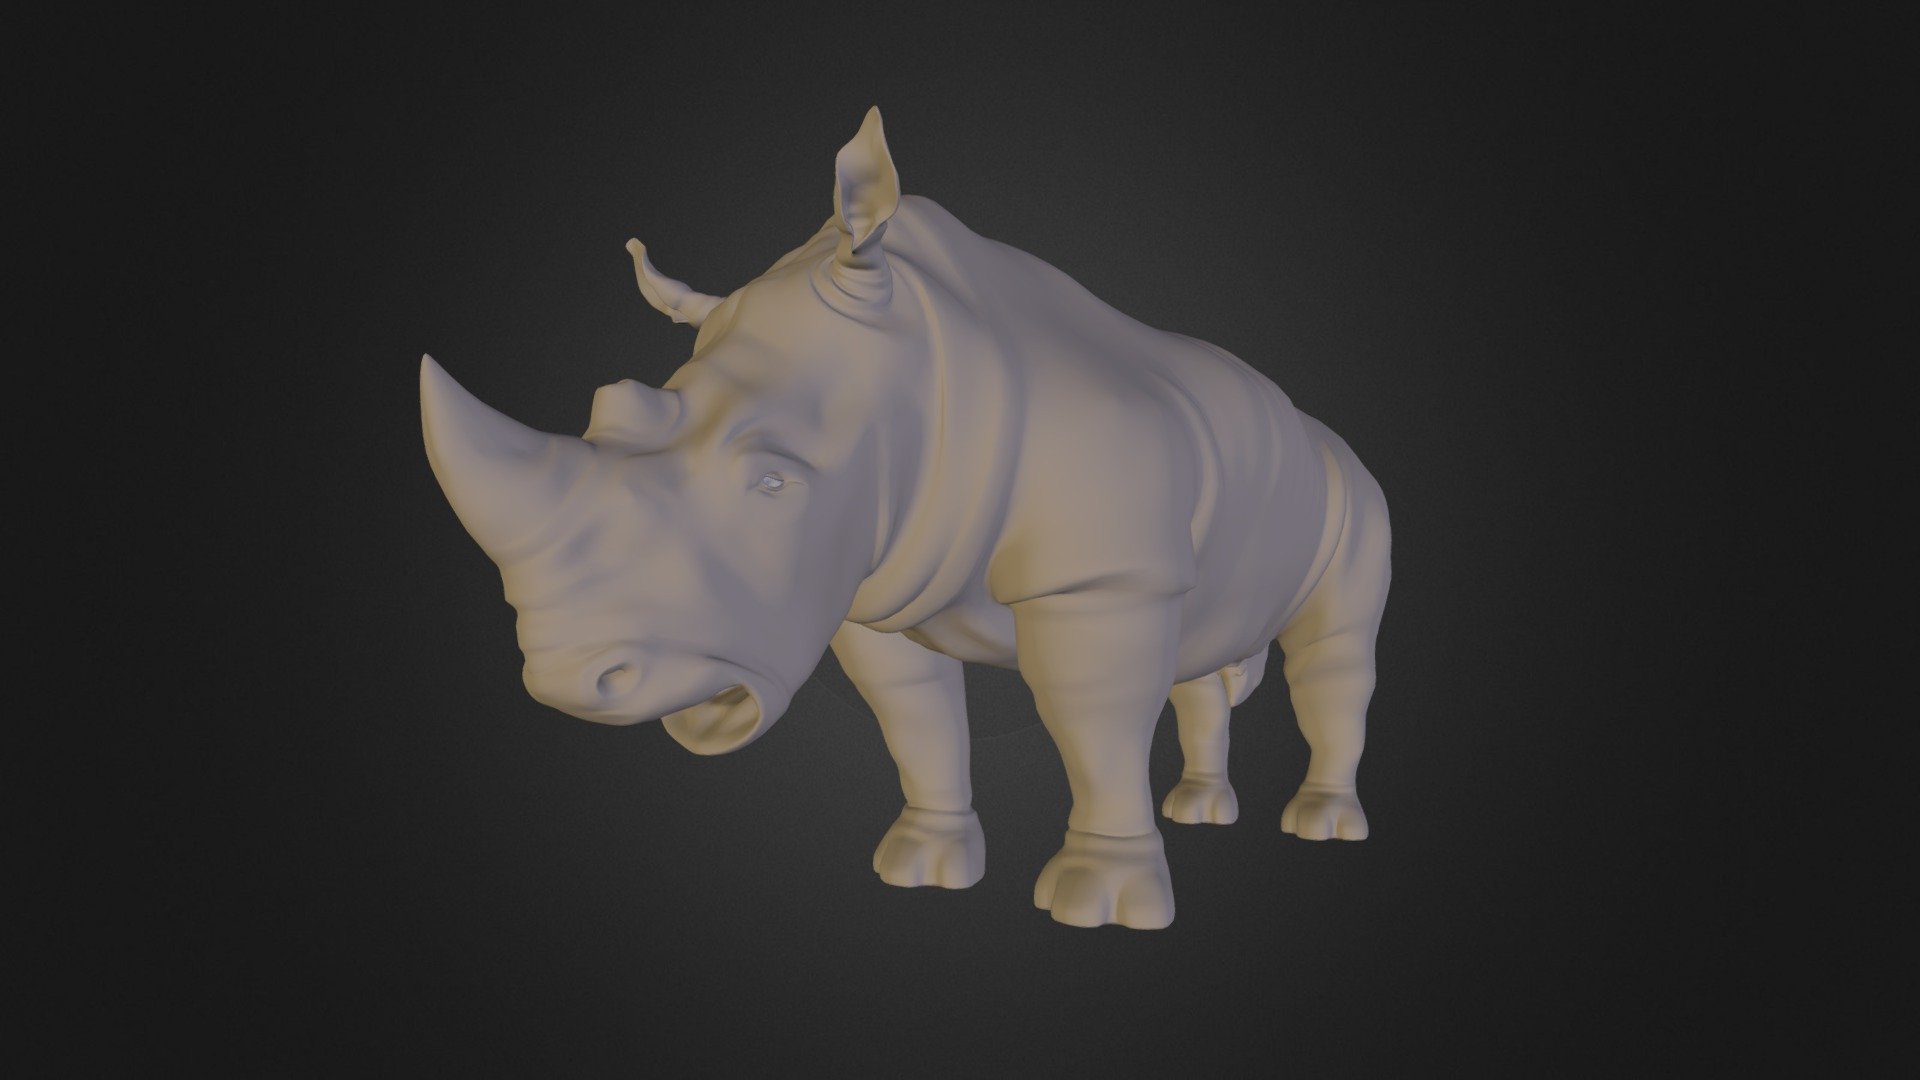 render in rhino